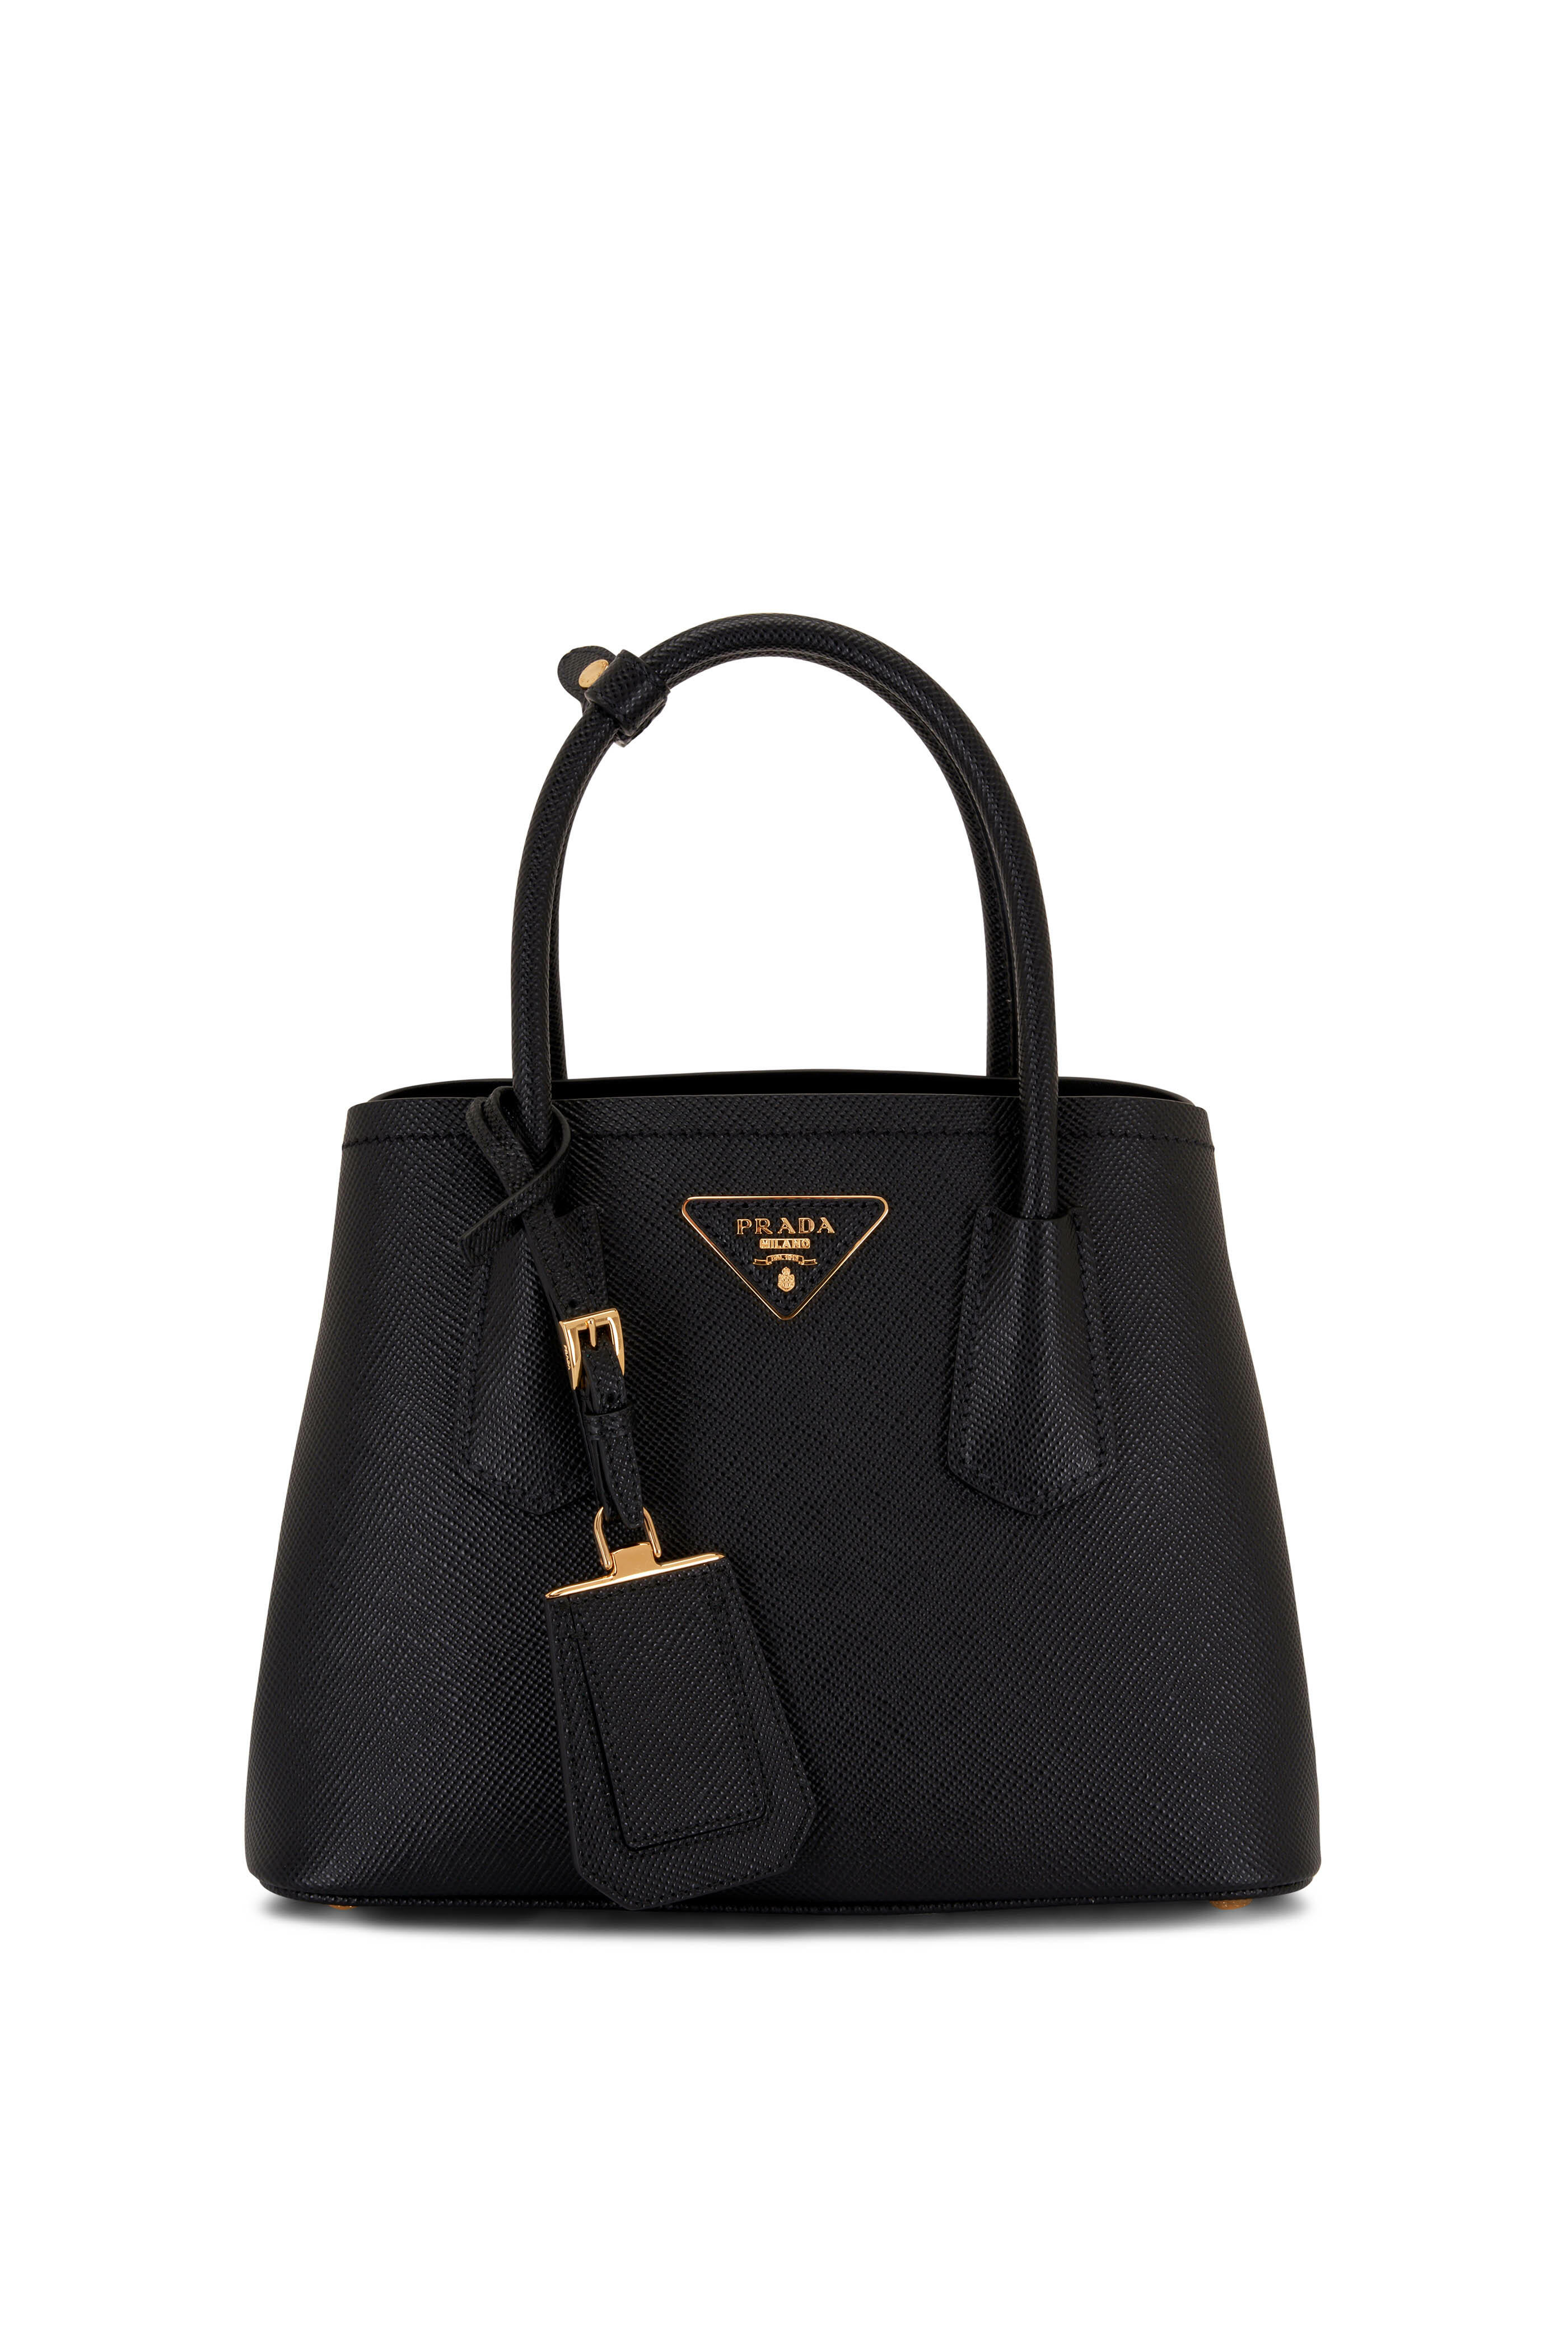 Prada Saffiano Leather Mini Bag